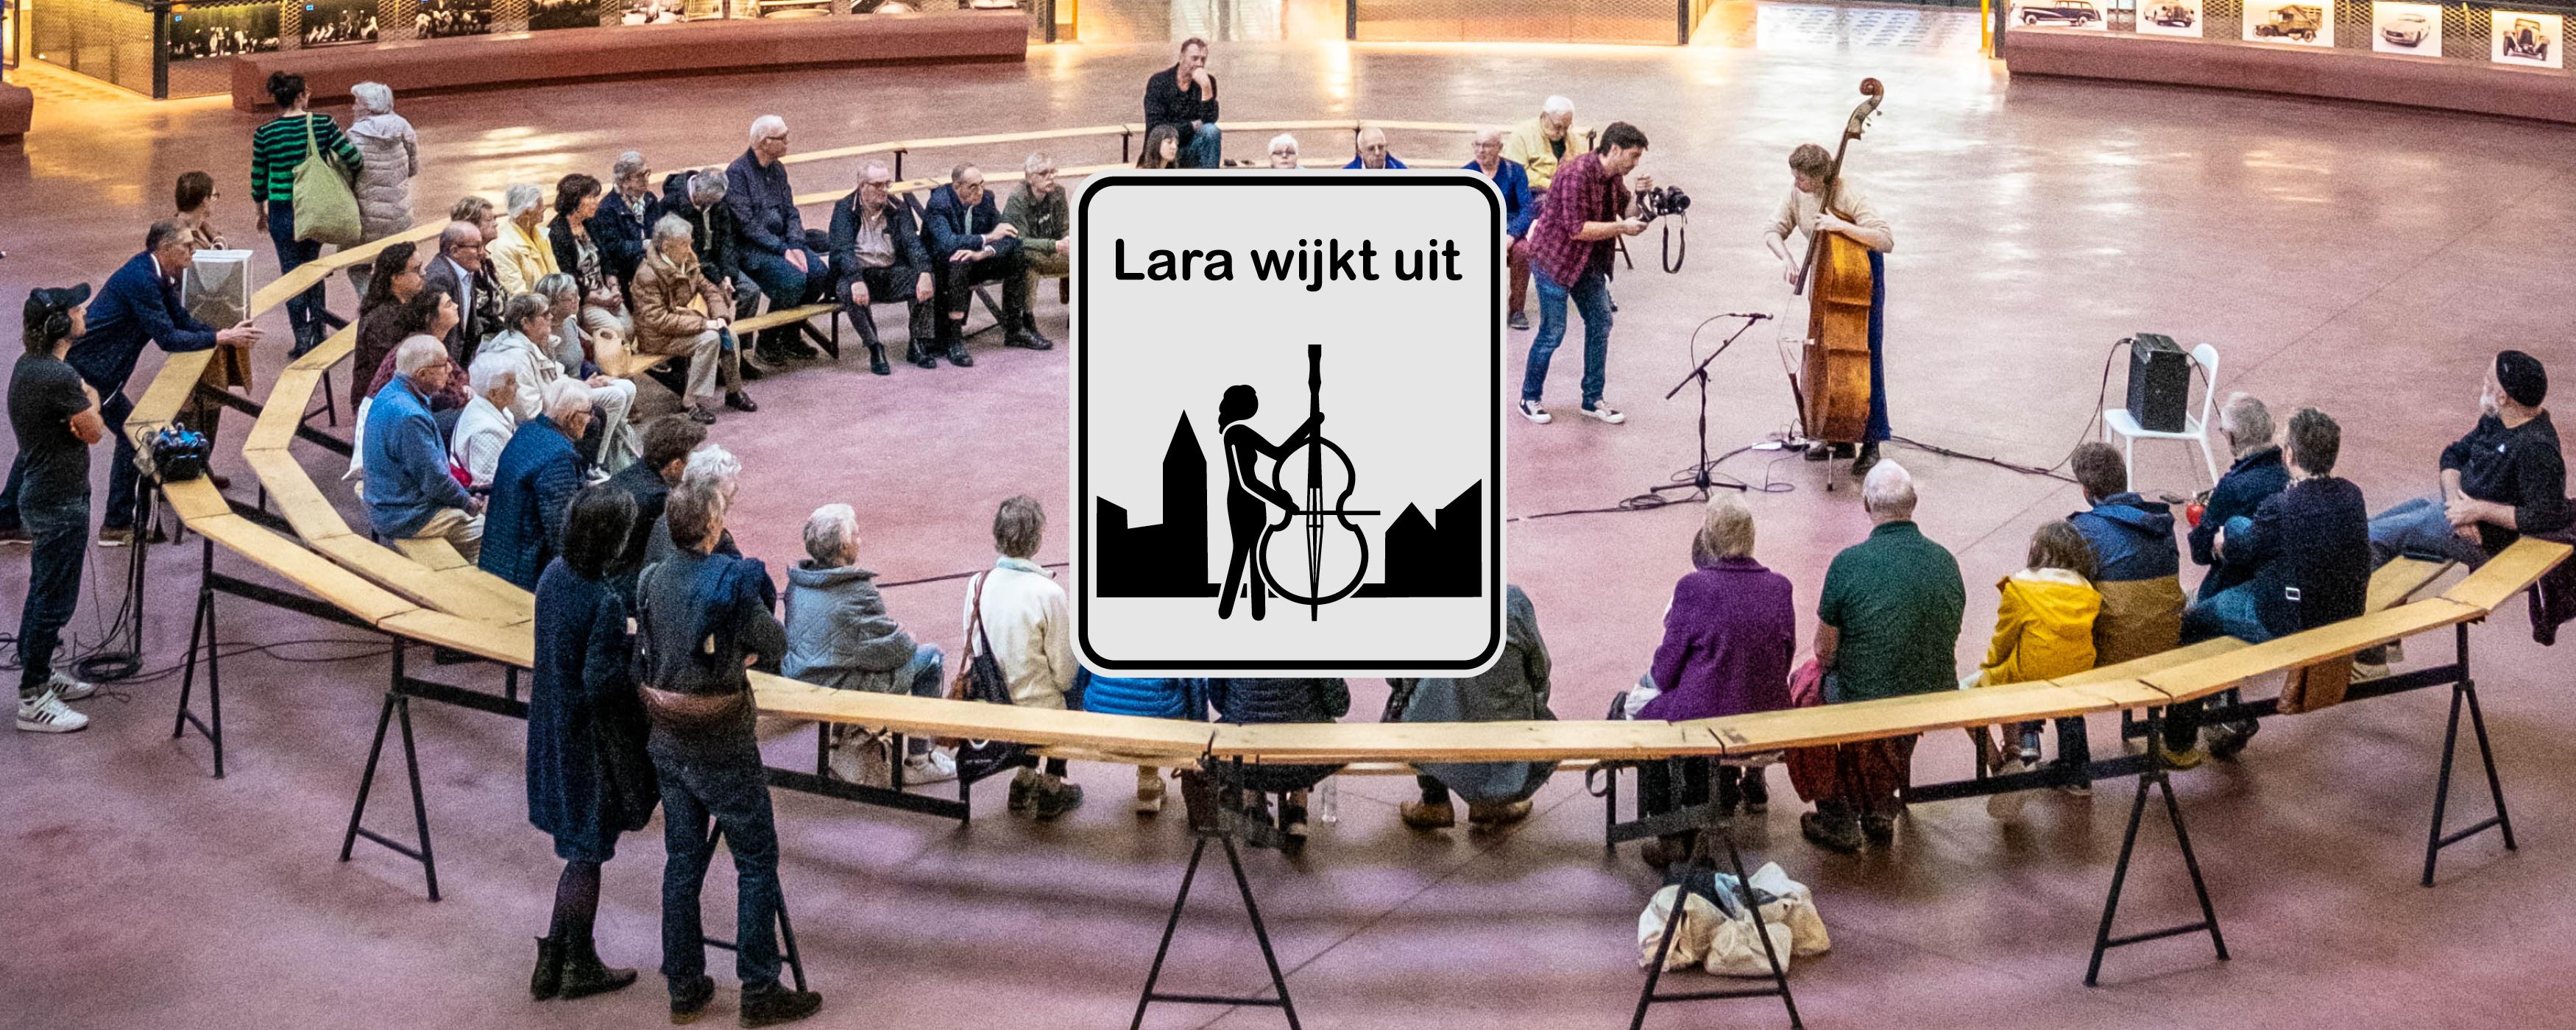 Lara Wijkt Uit - Stadcomponist Lara Rosseel op 'Tribunetoer' langs Gentse Wijken